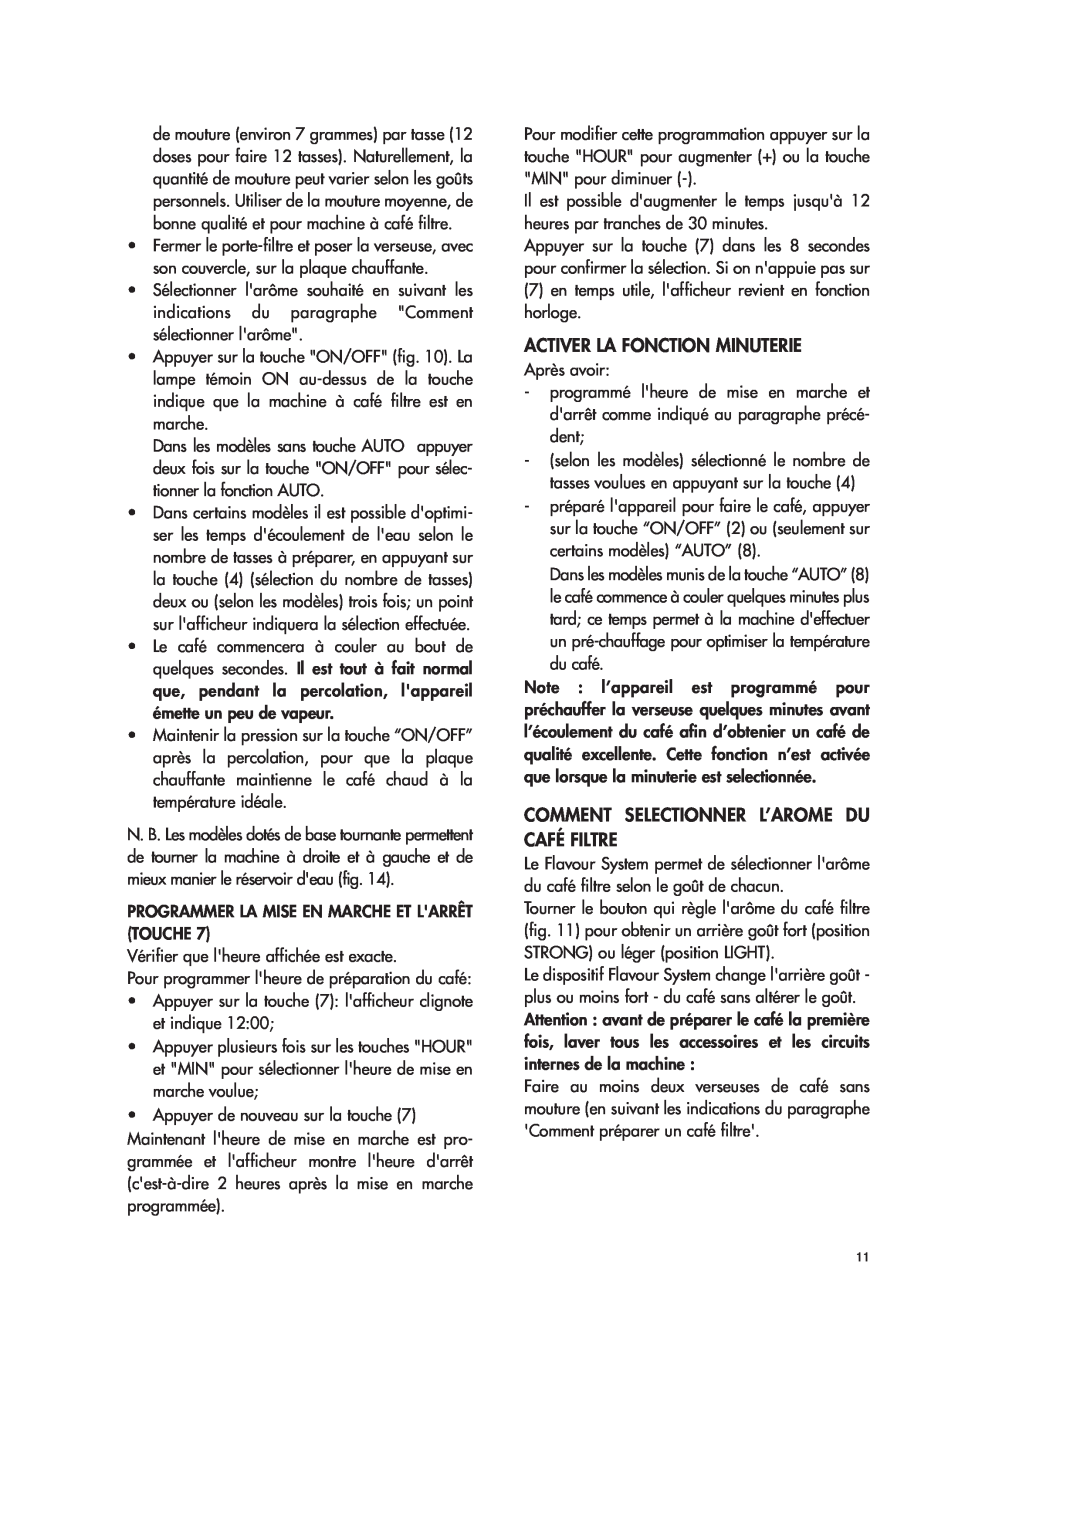 DeLonghi ICM28 WB instruction manual Activer La Fonction Minuterie, Comment Selectionner L’Arome Du Café Filtre 